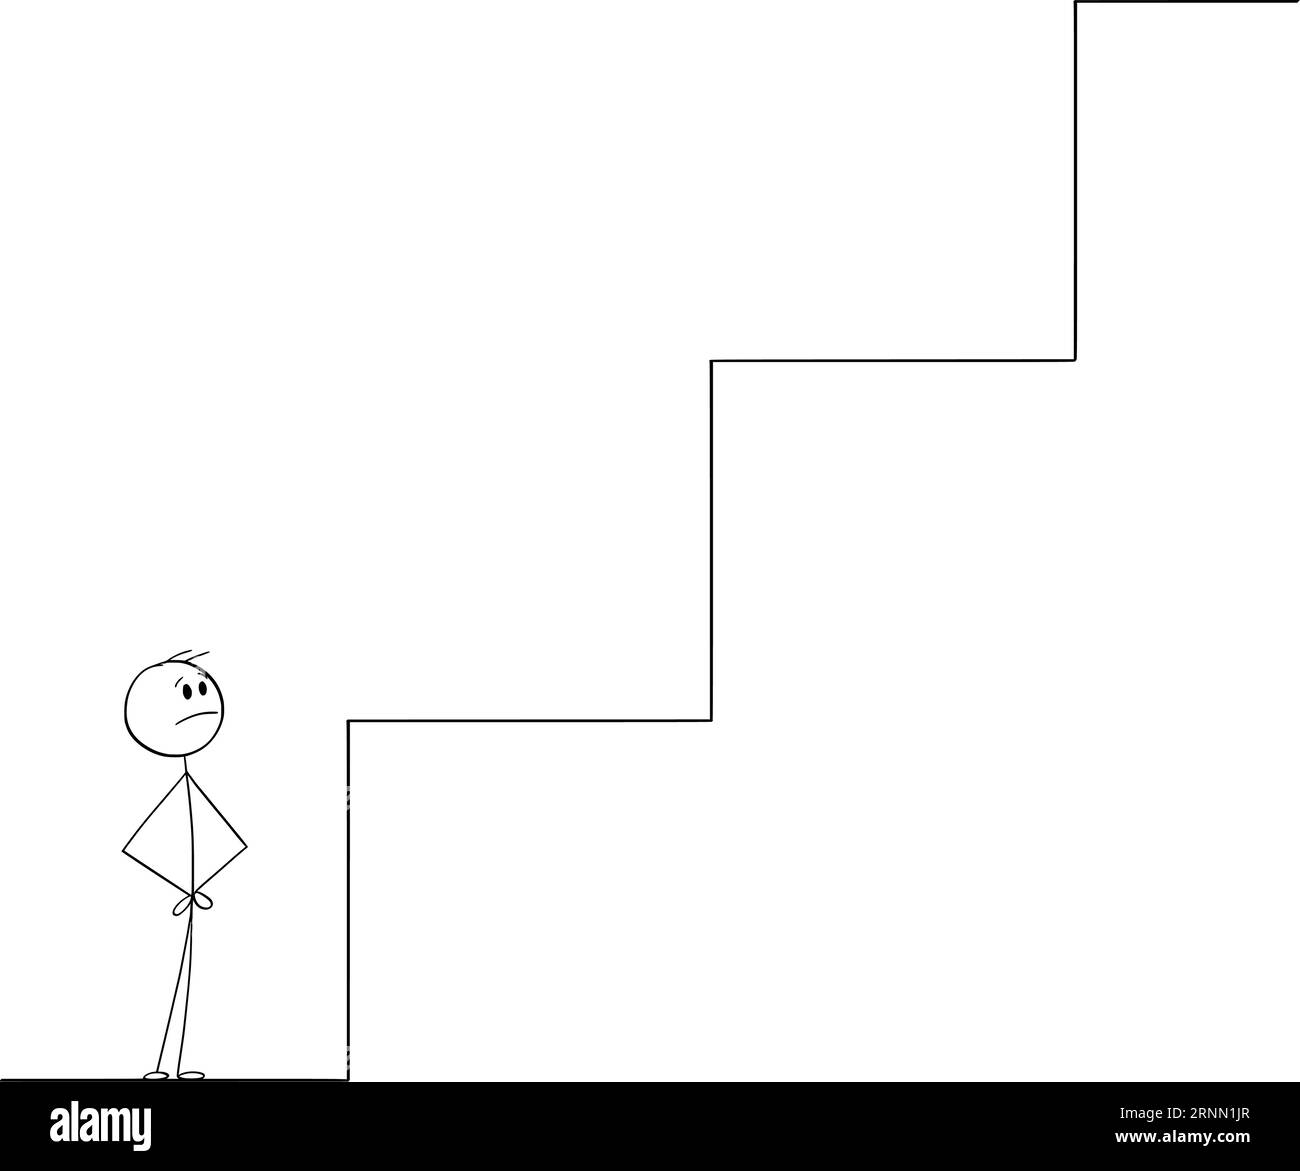 Persona che guarda passi giganti o ostacoli , illustrazione della figura del Cartoon Stick Vector Illustrazione Vettoriale